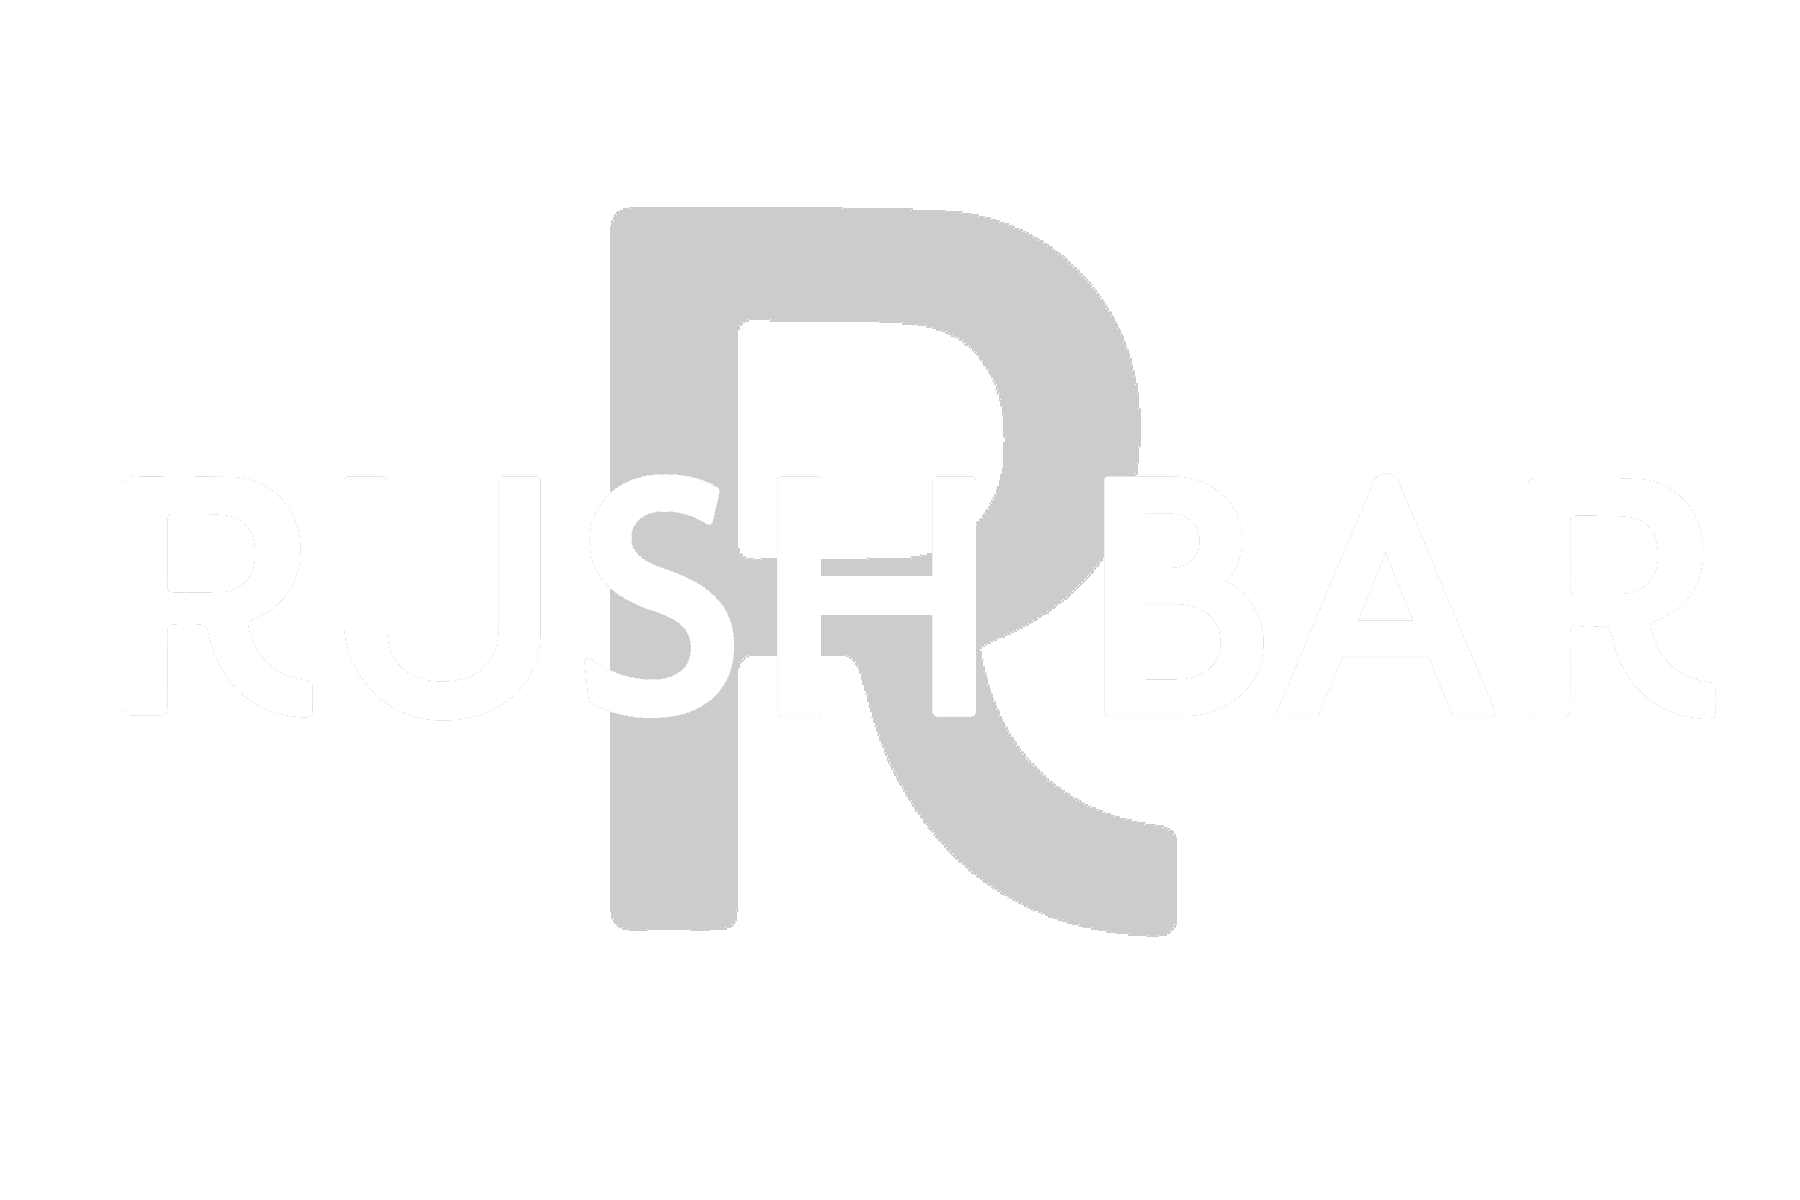 Rush Bar